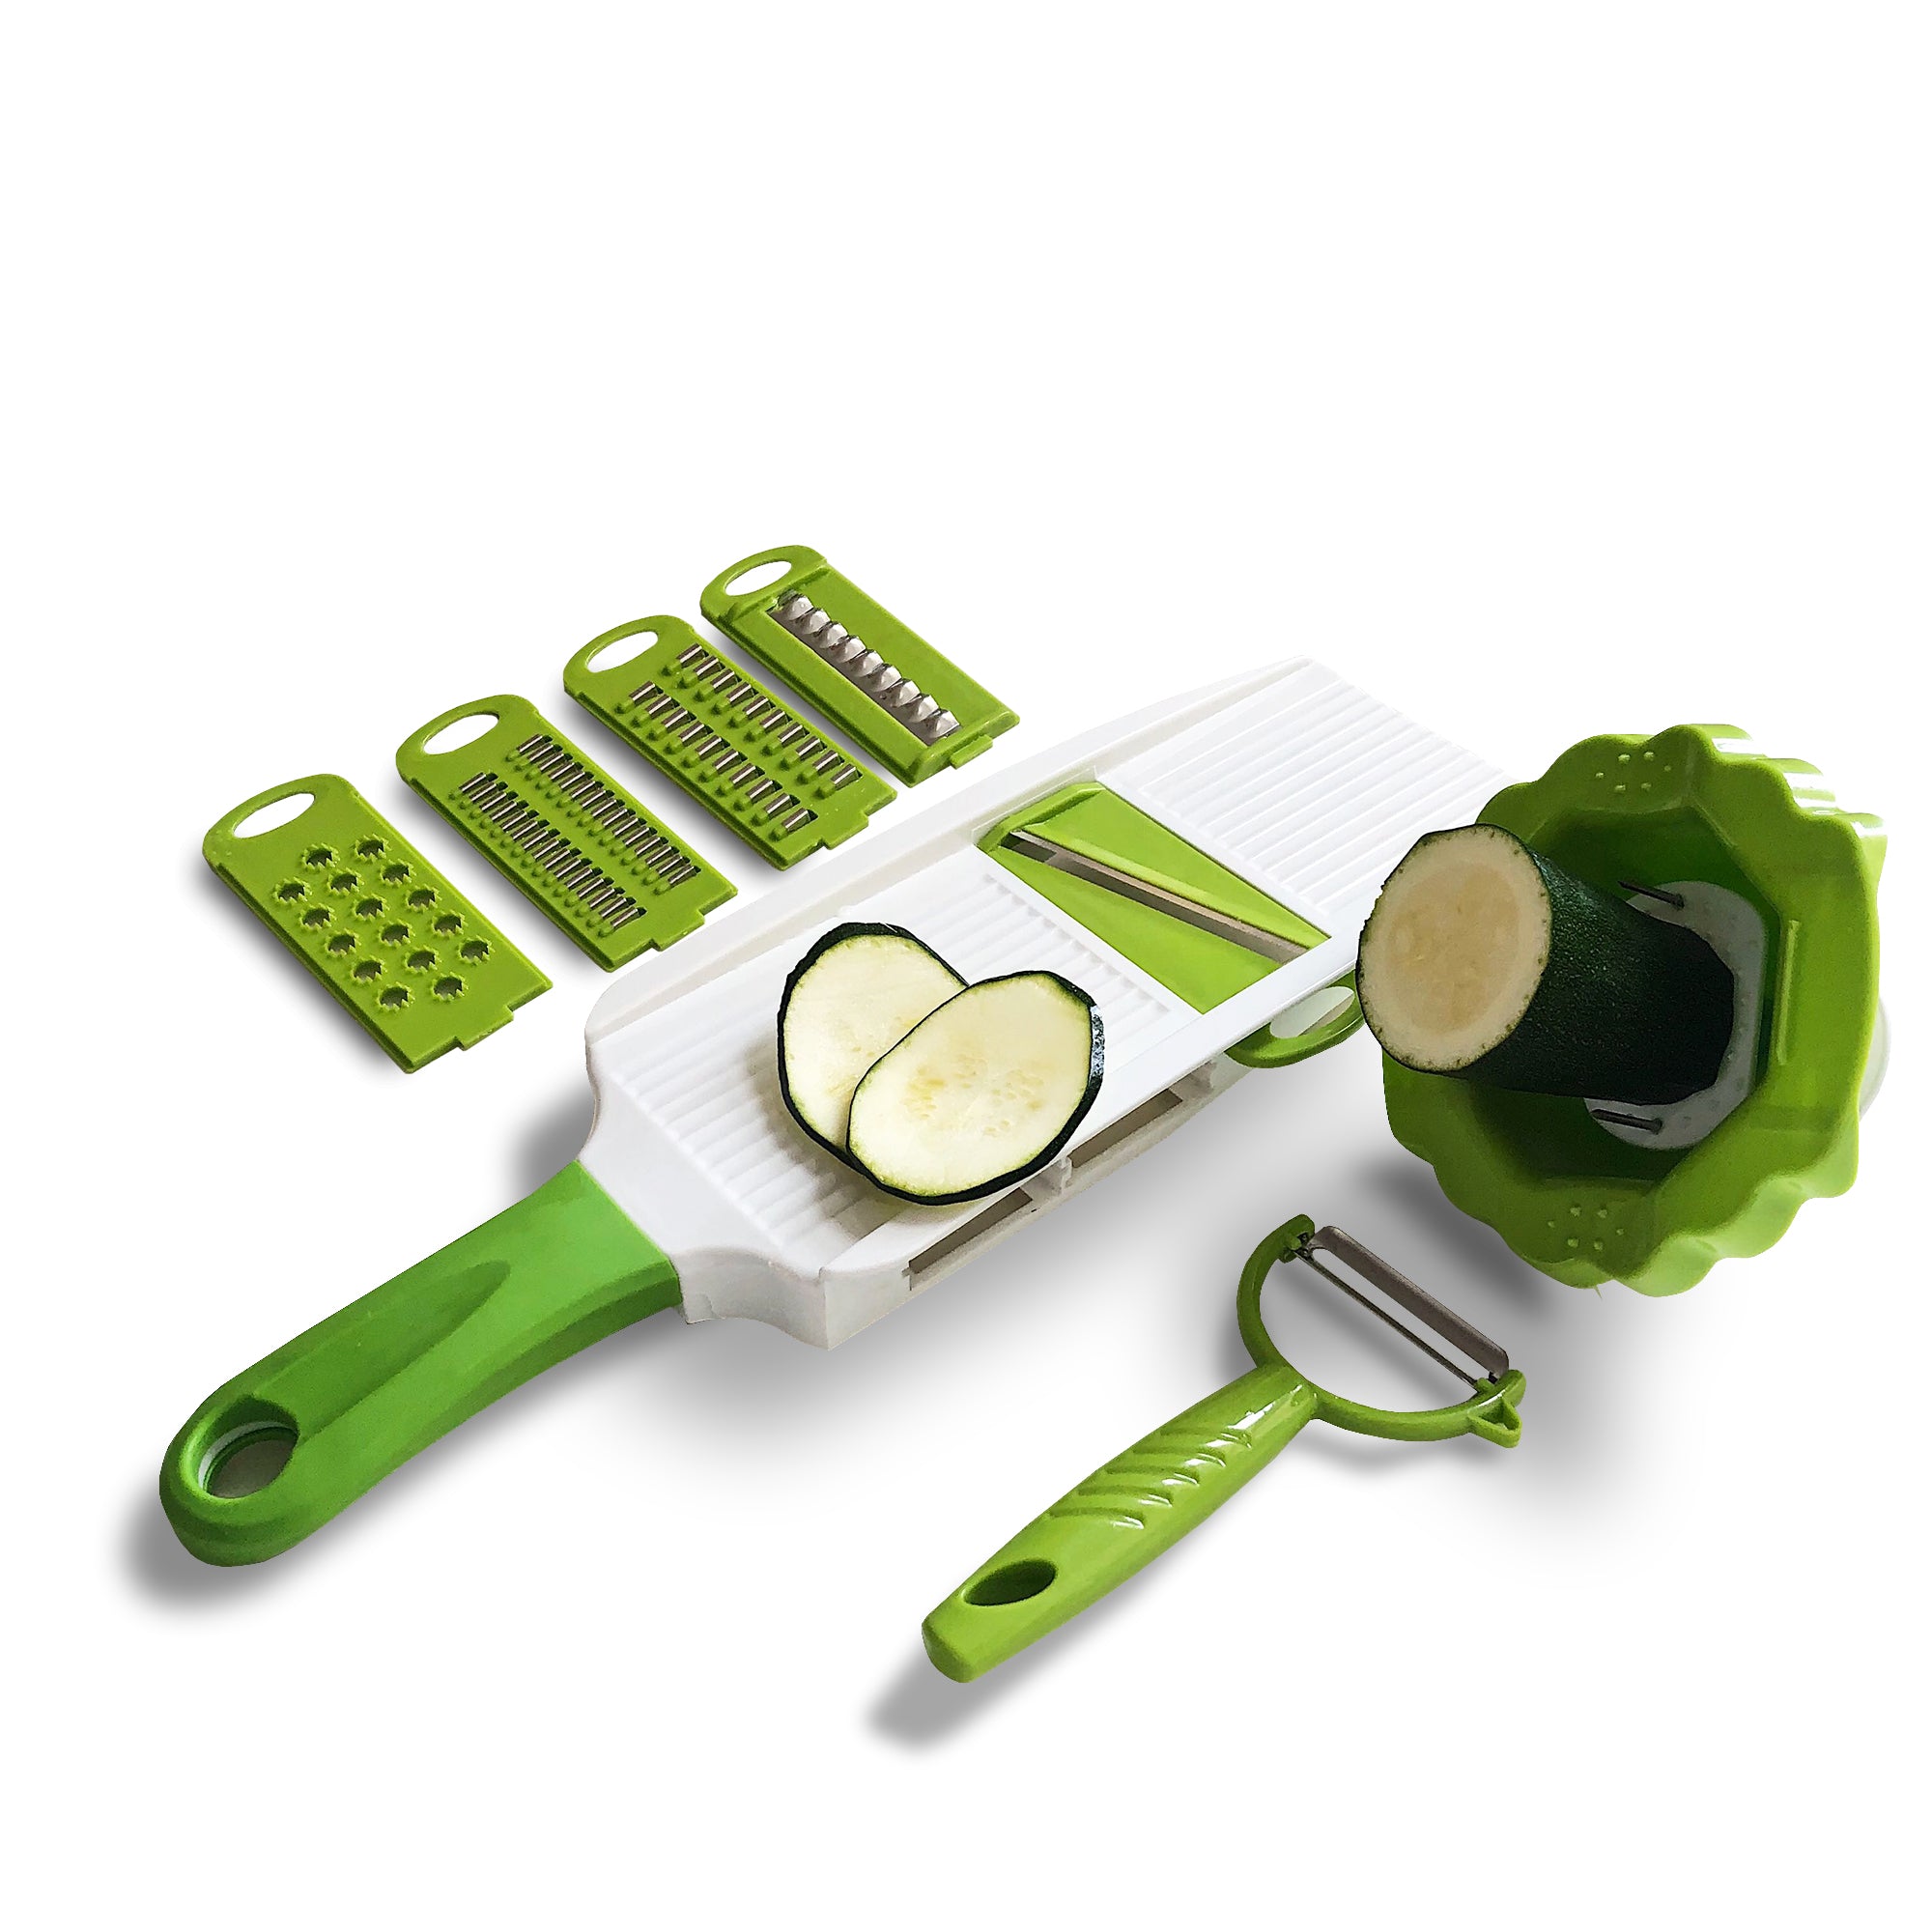 Multi-Purpose Vegetable Slicer - Wholesale Send